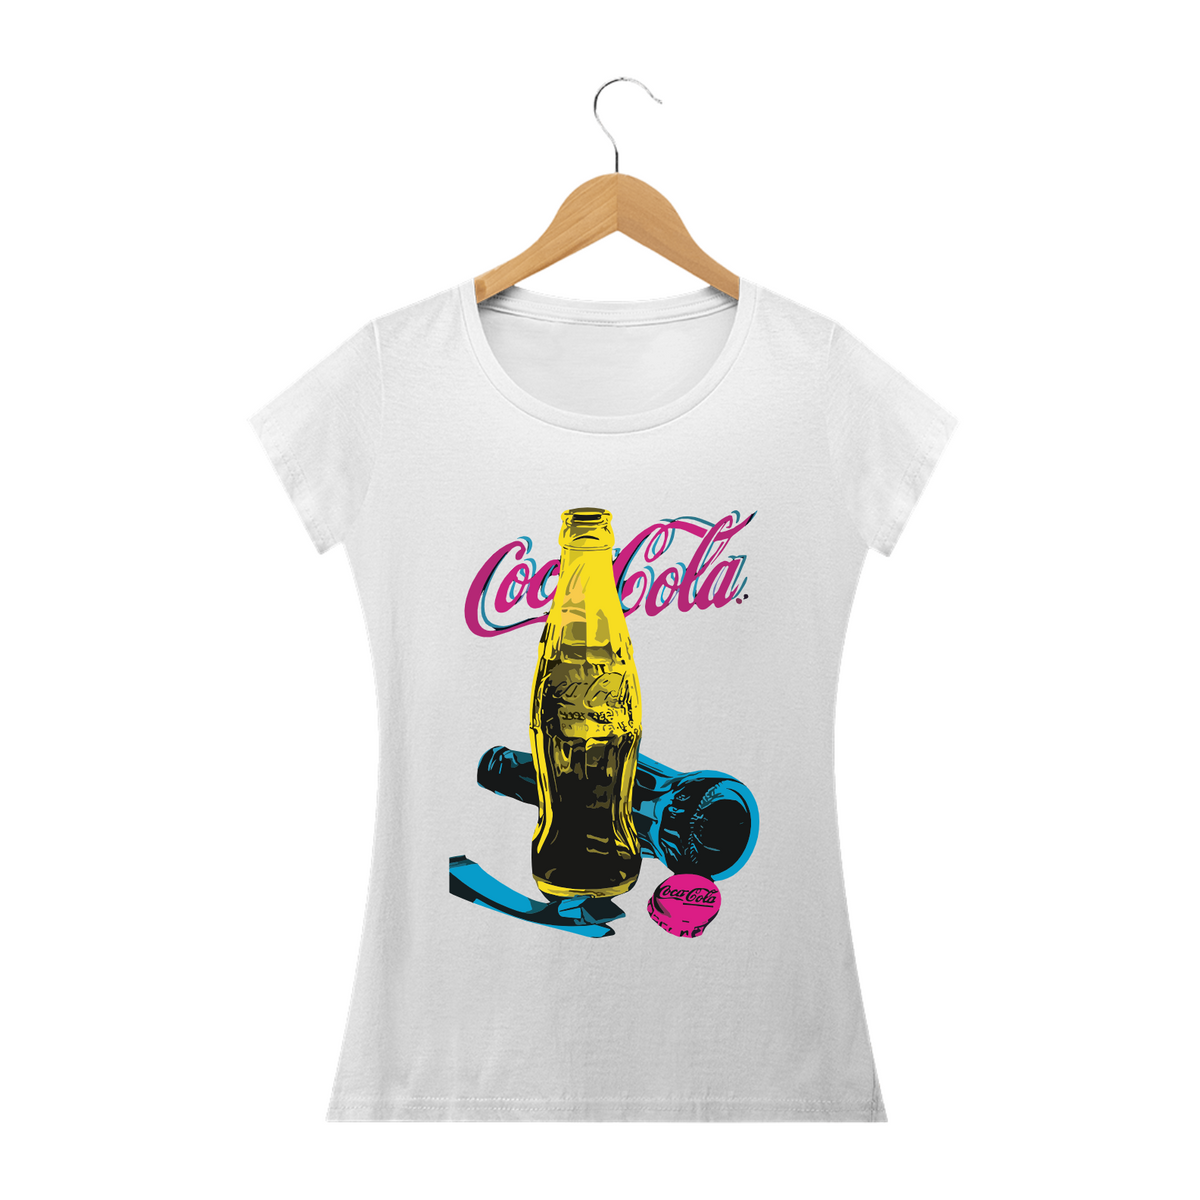 Nome do produto: COCA-COLA NEON - Camiseta Personalizada com Estampa Pop Art